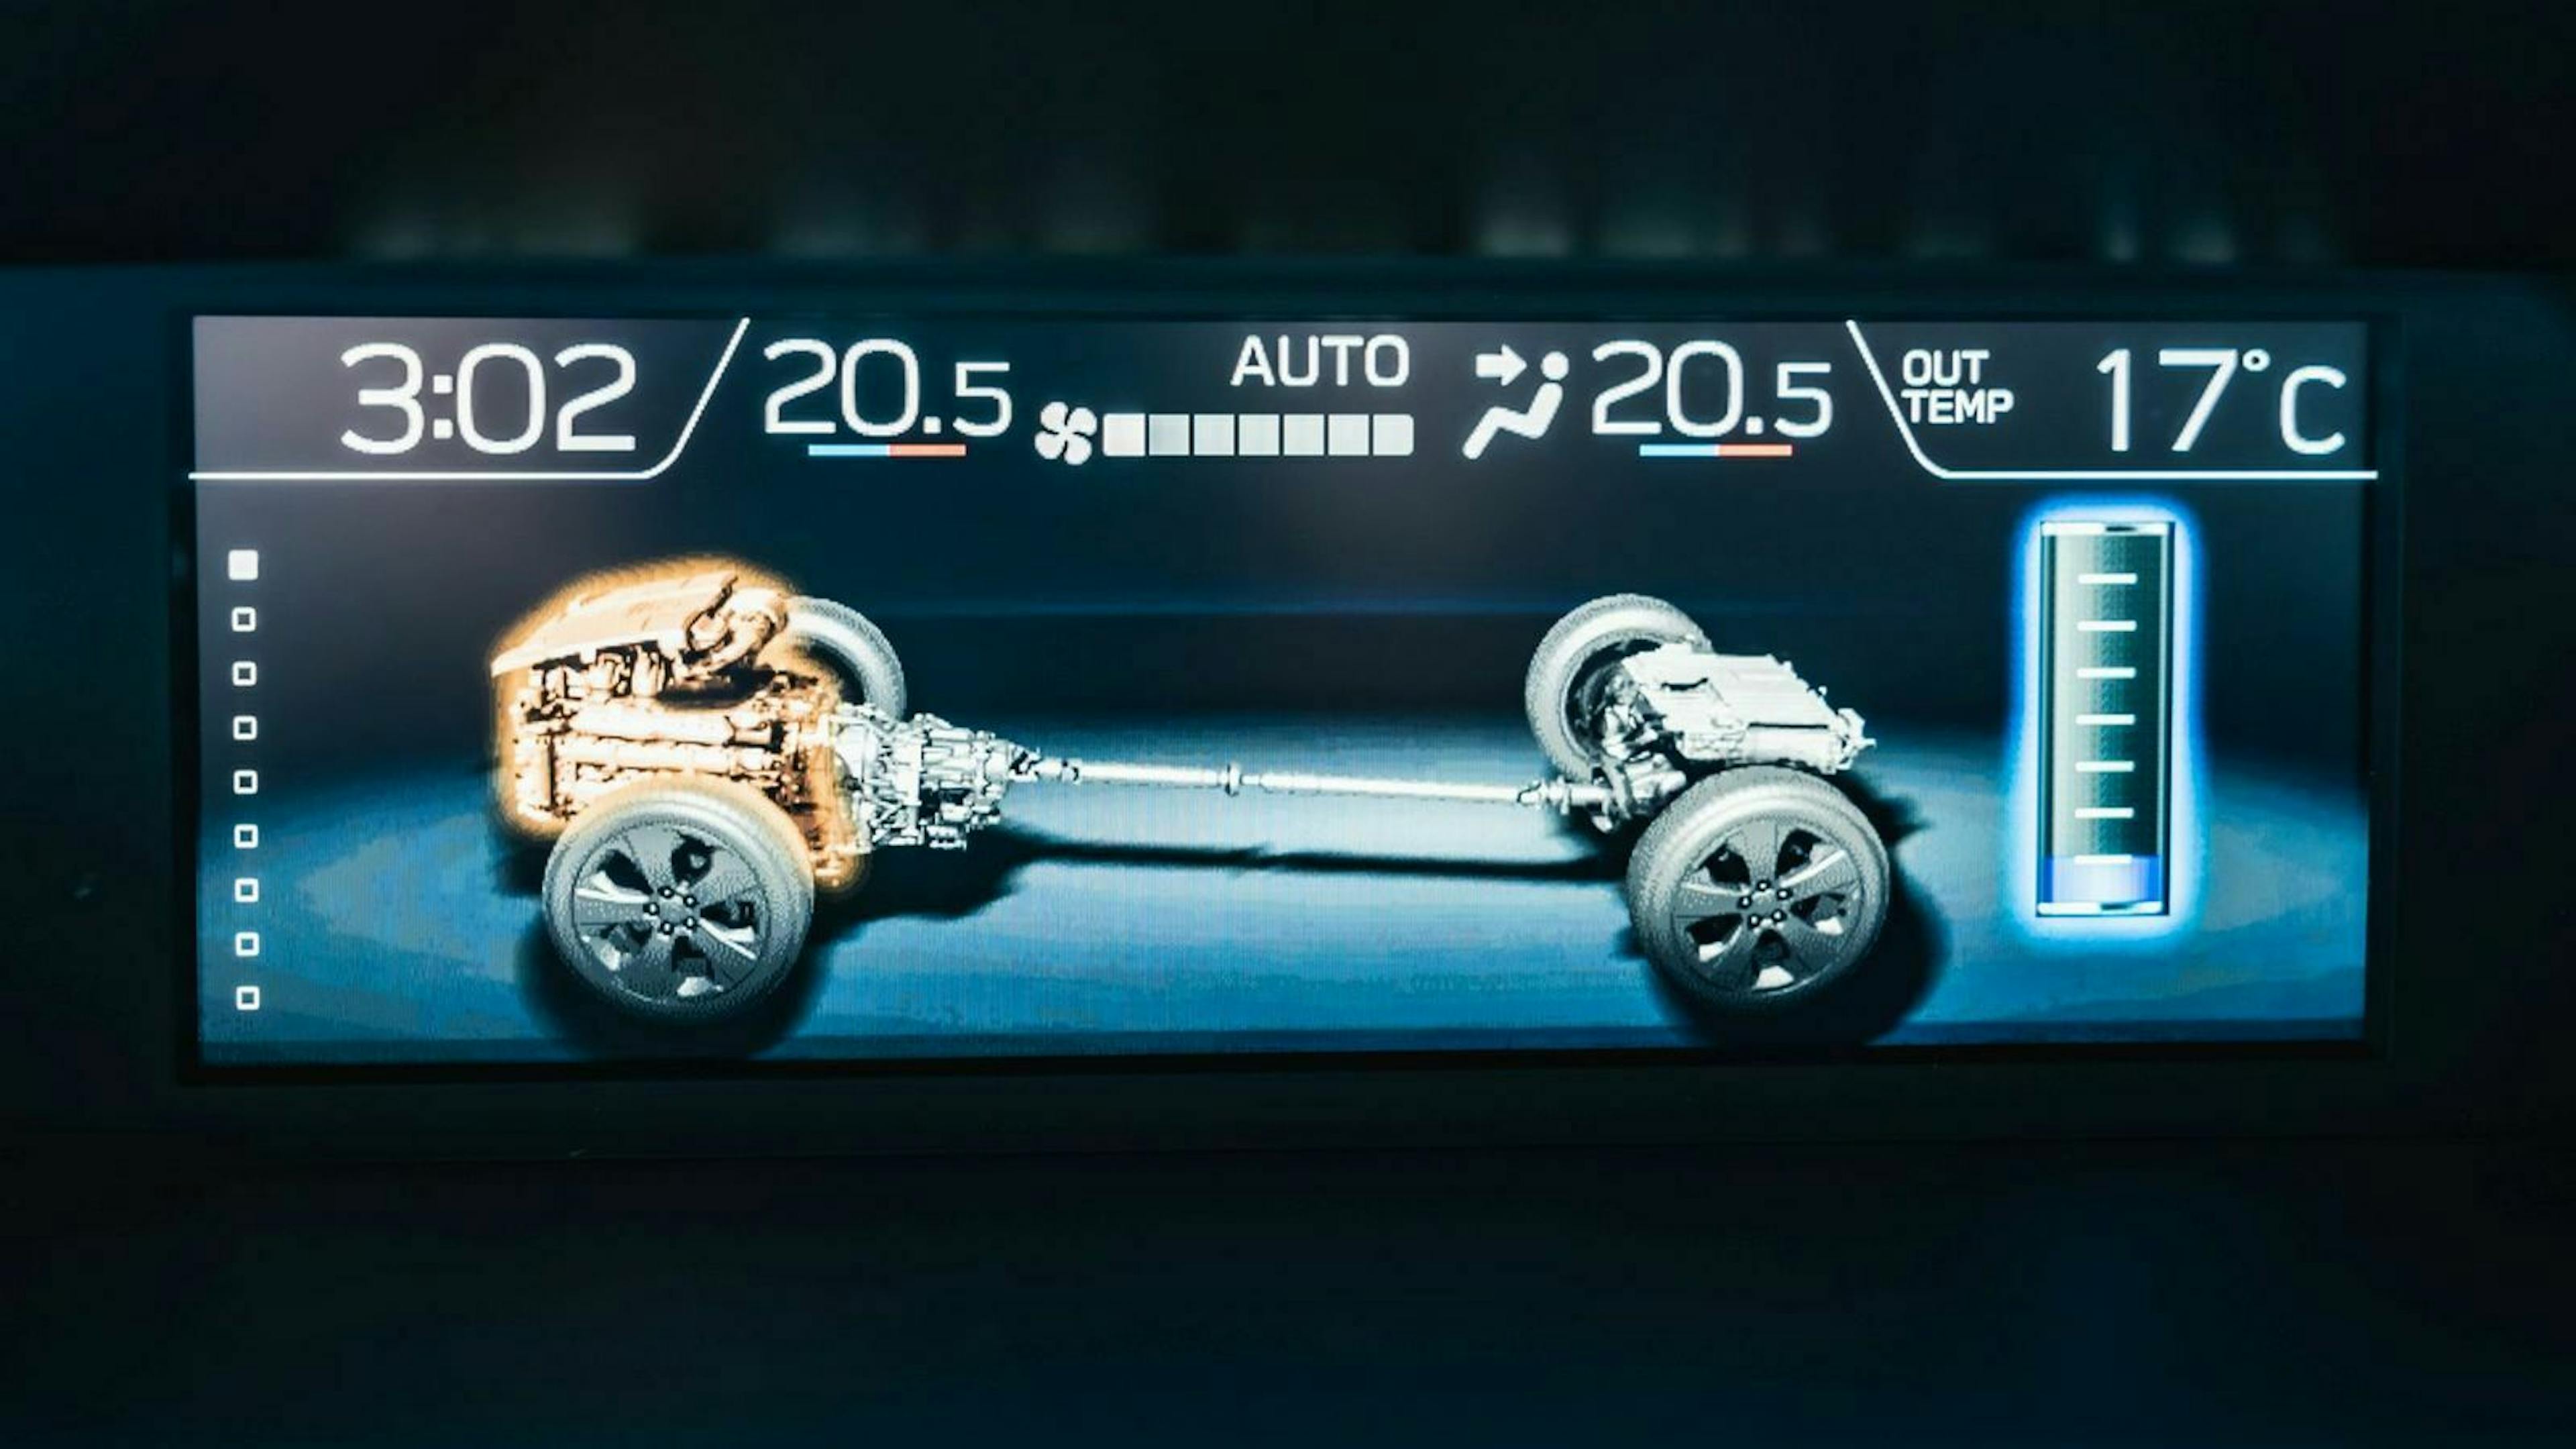 Zu sehen ist eine illustartion des Hybridantriebes des Subaru Impreza E-Boxer Hybrid